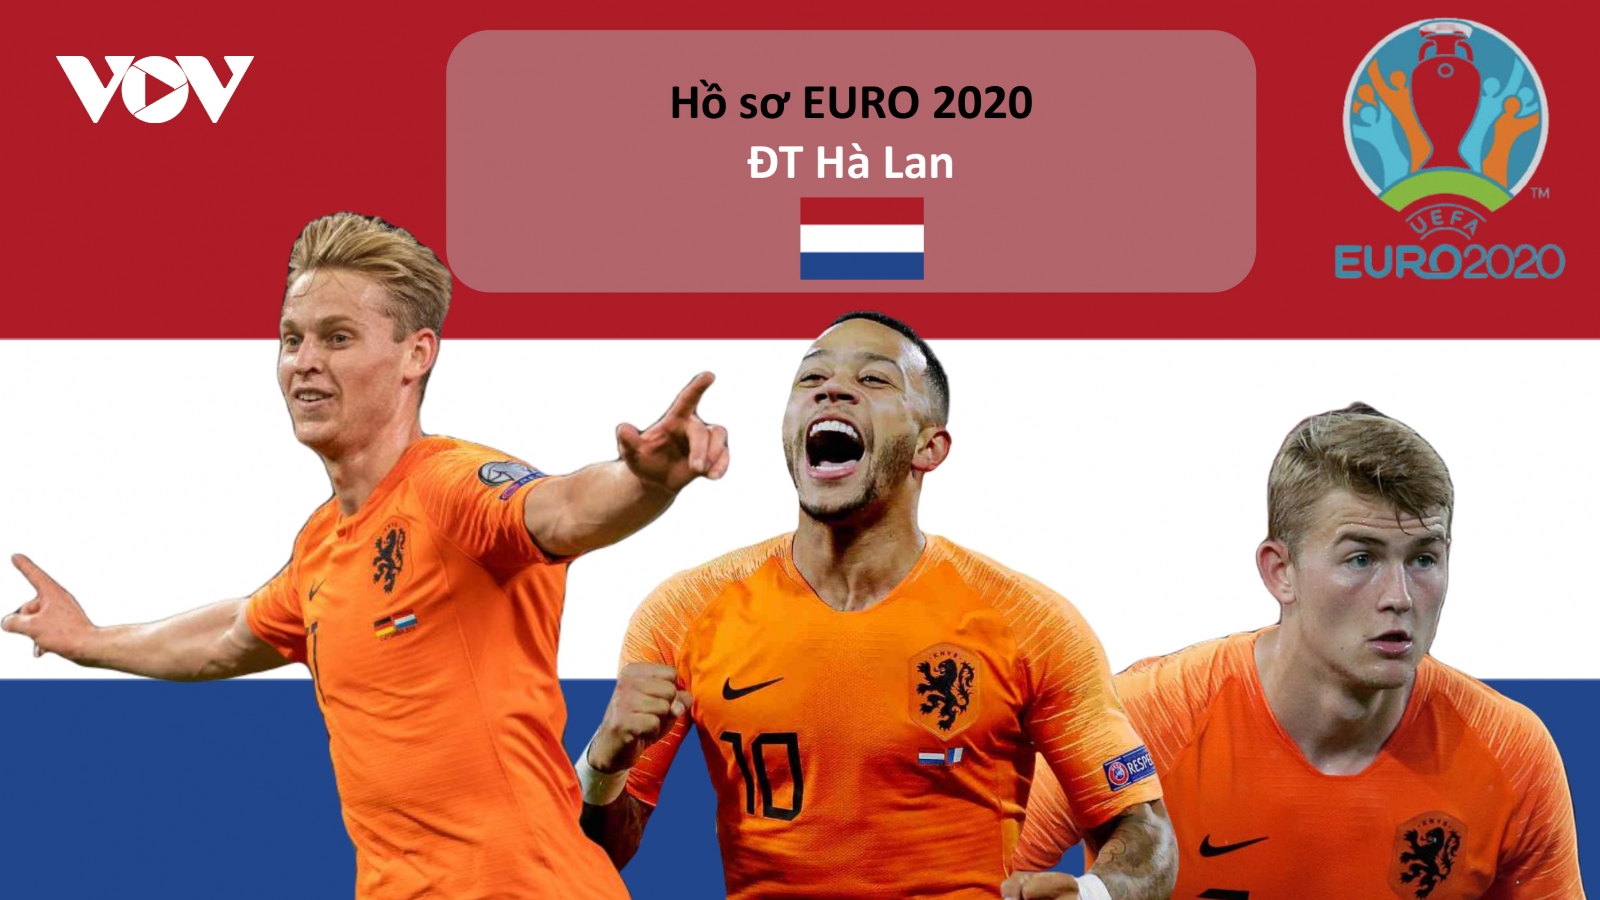 Hồ sơ các ĐT dự EURO 2020: Đội tuyển Hà Lan